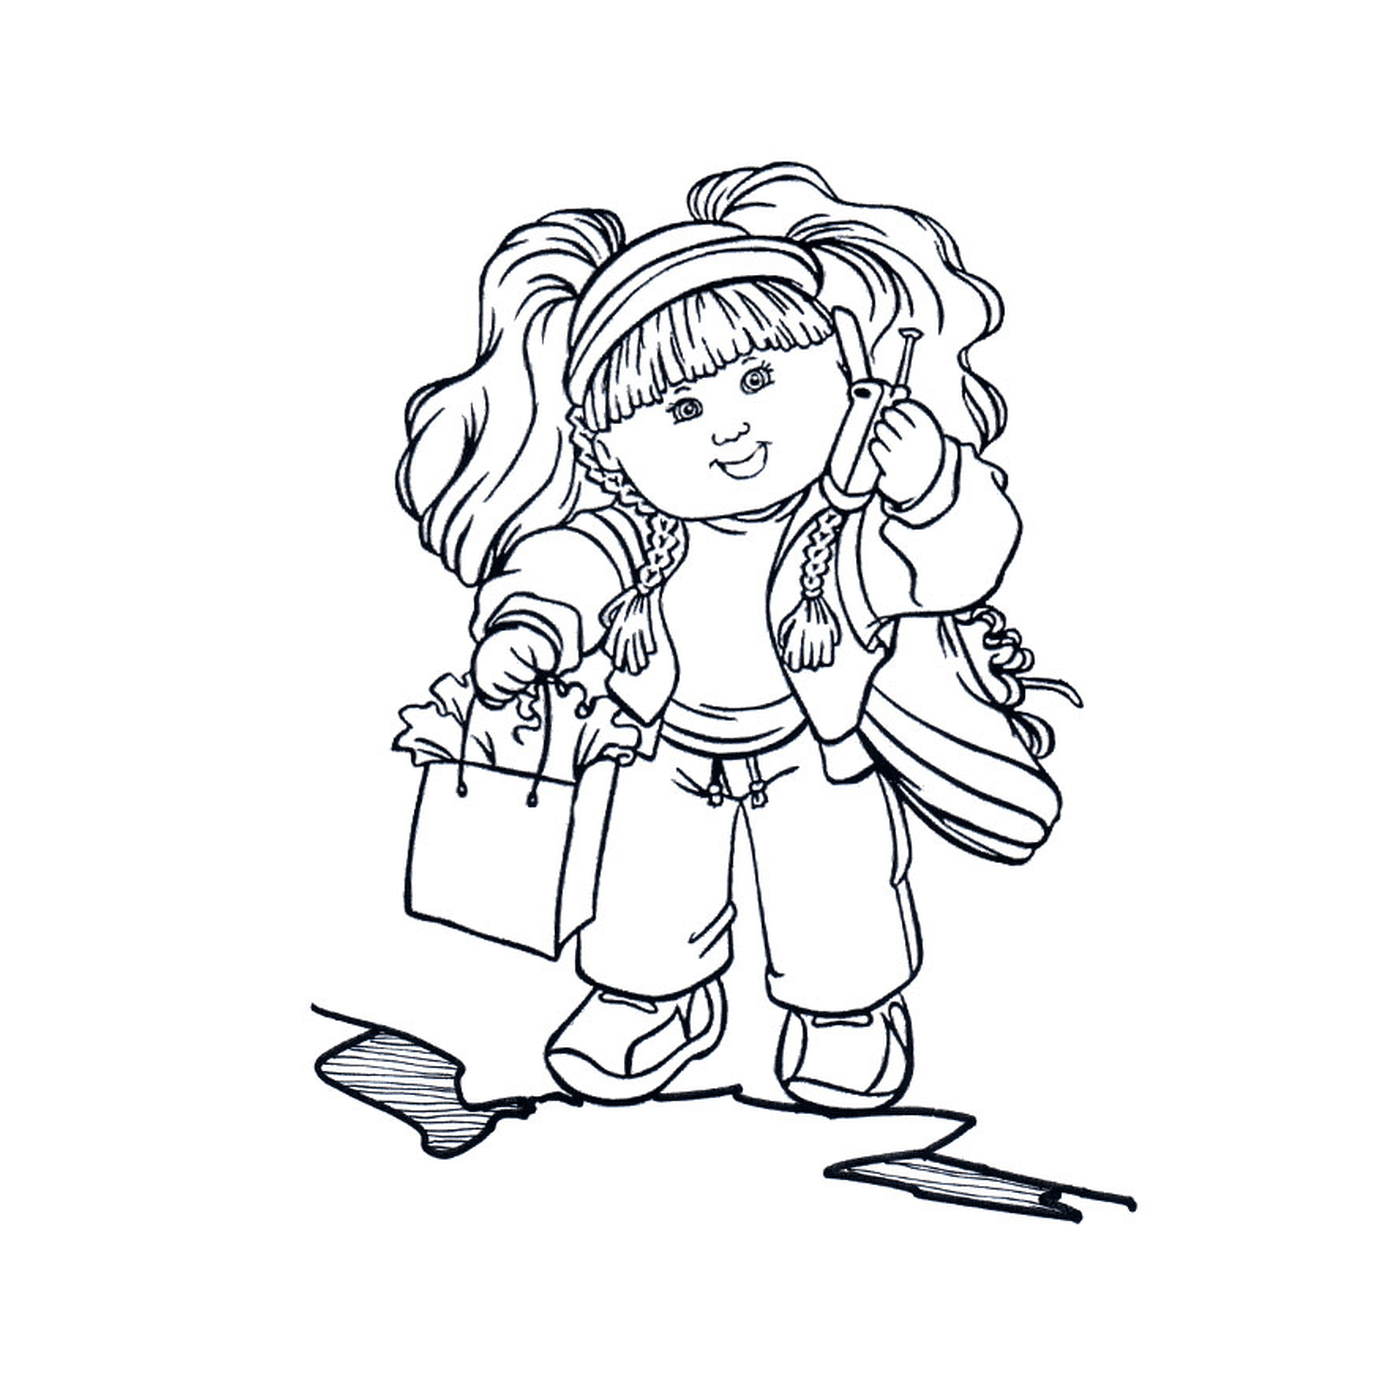   Une petite fille de 7 ans tenant des sacs de courses 